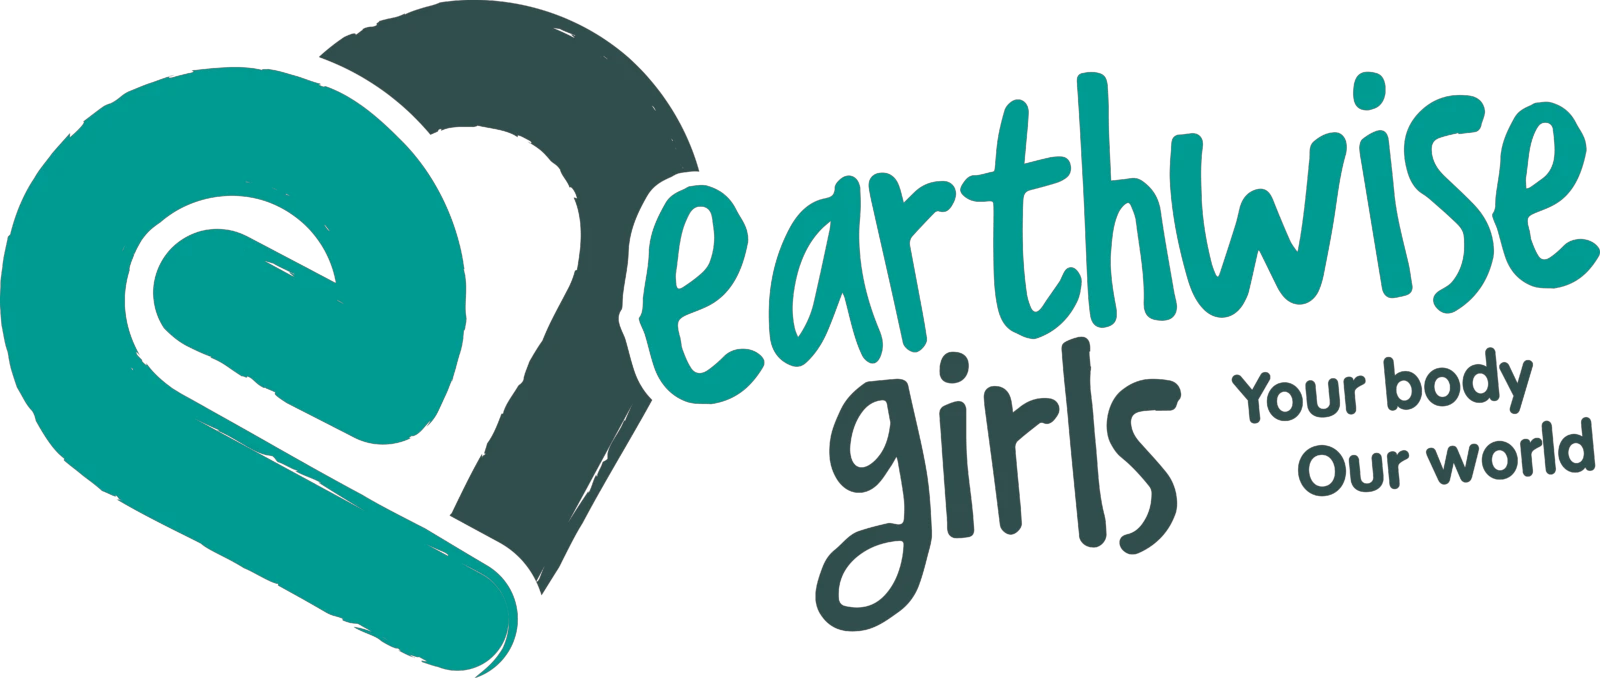  Earthwisegirls.co.uk